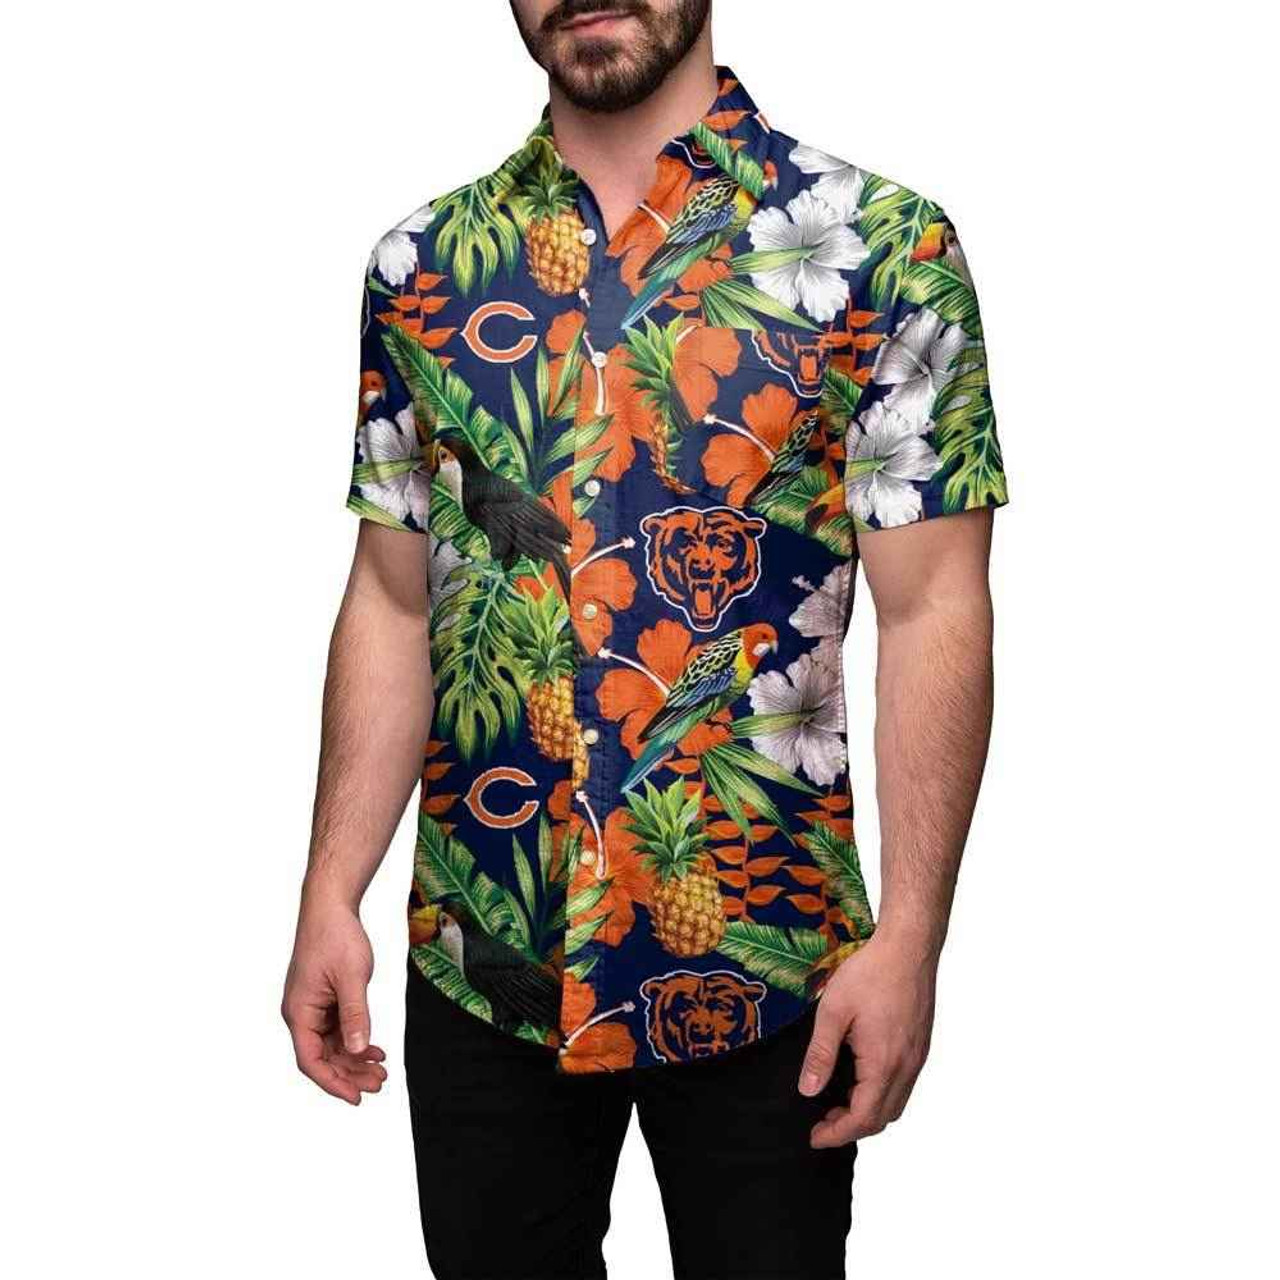 twins hawaiian shirt